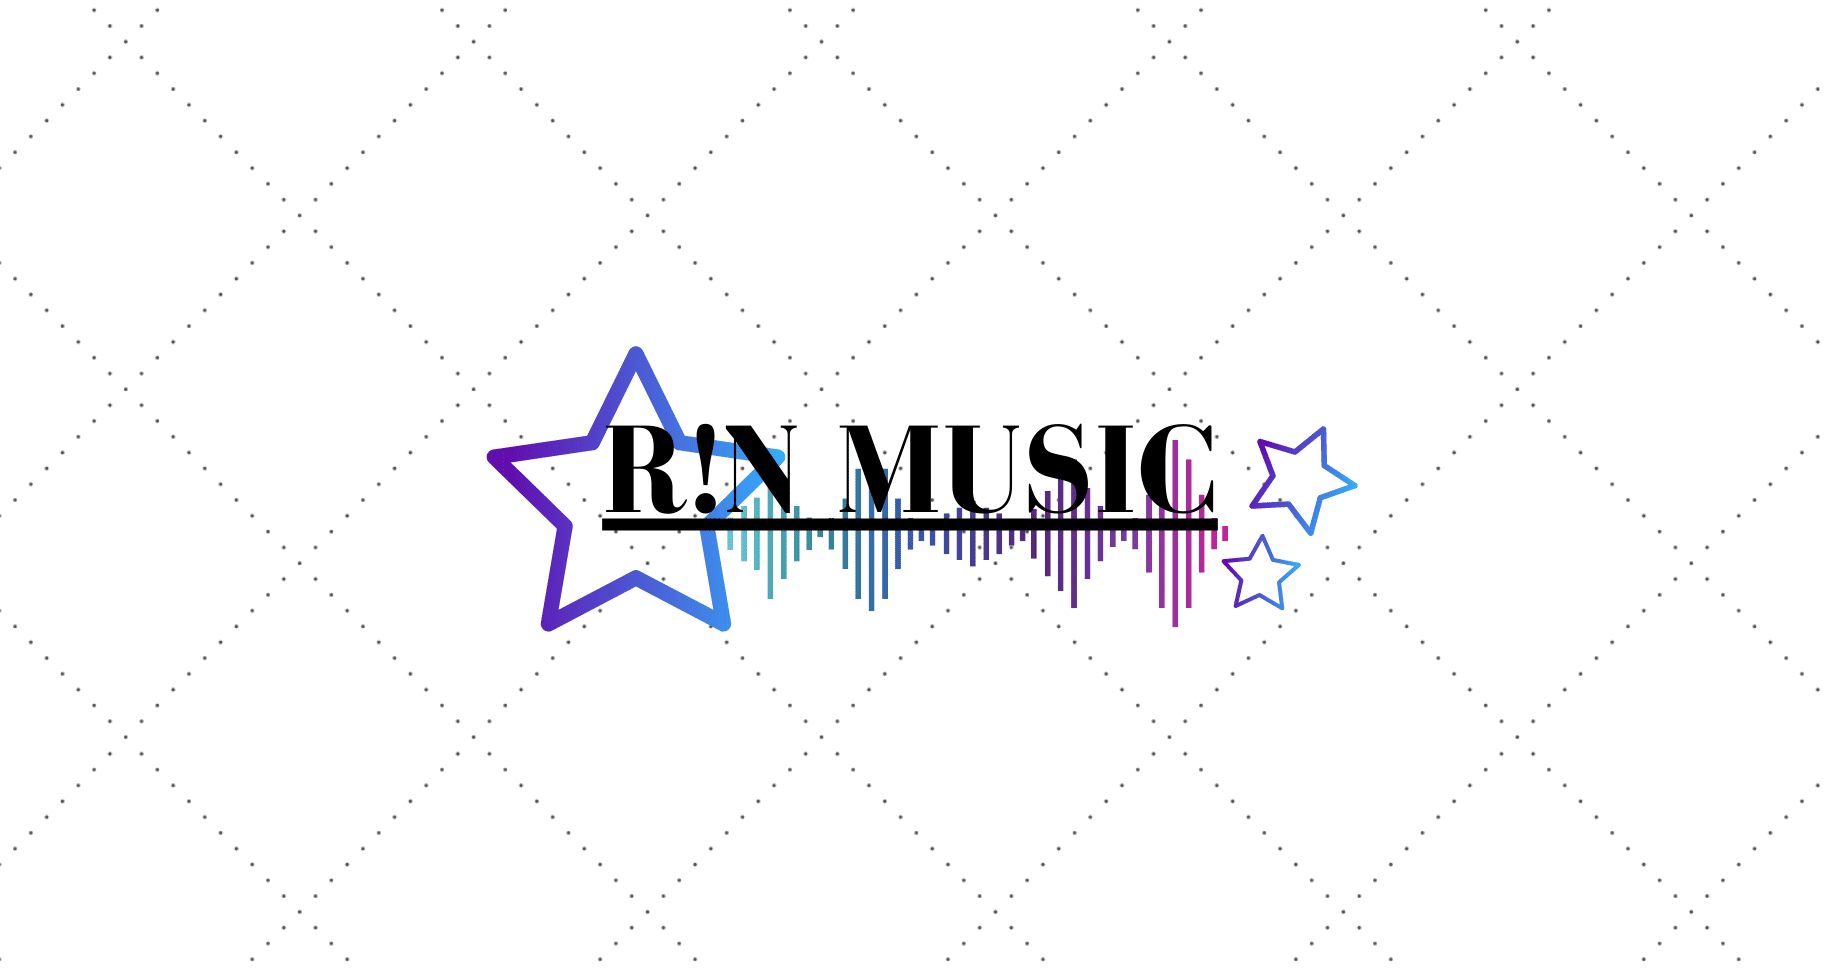 R!N MUSIC